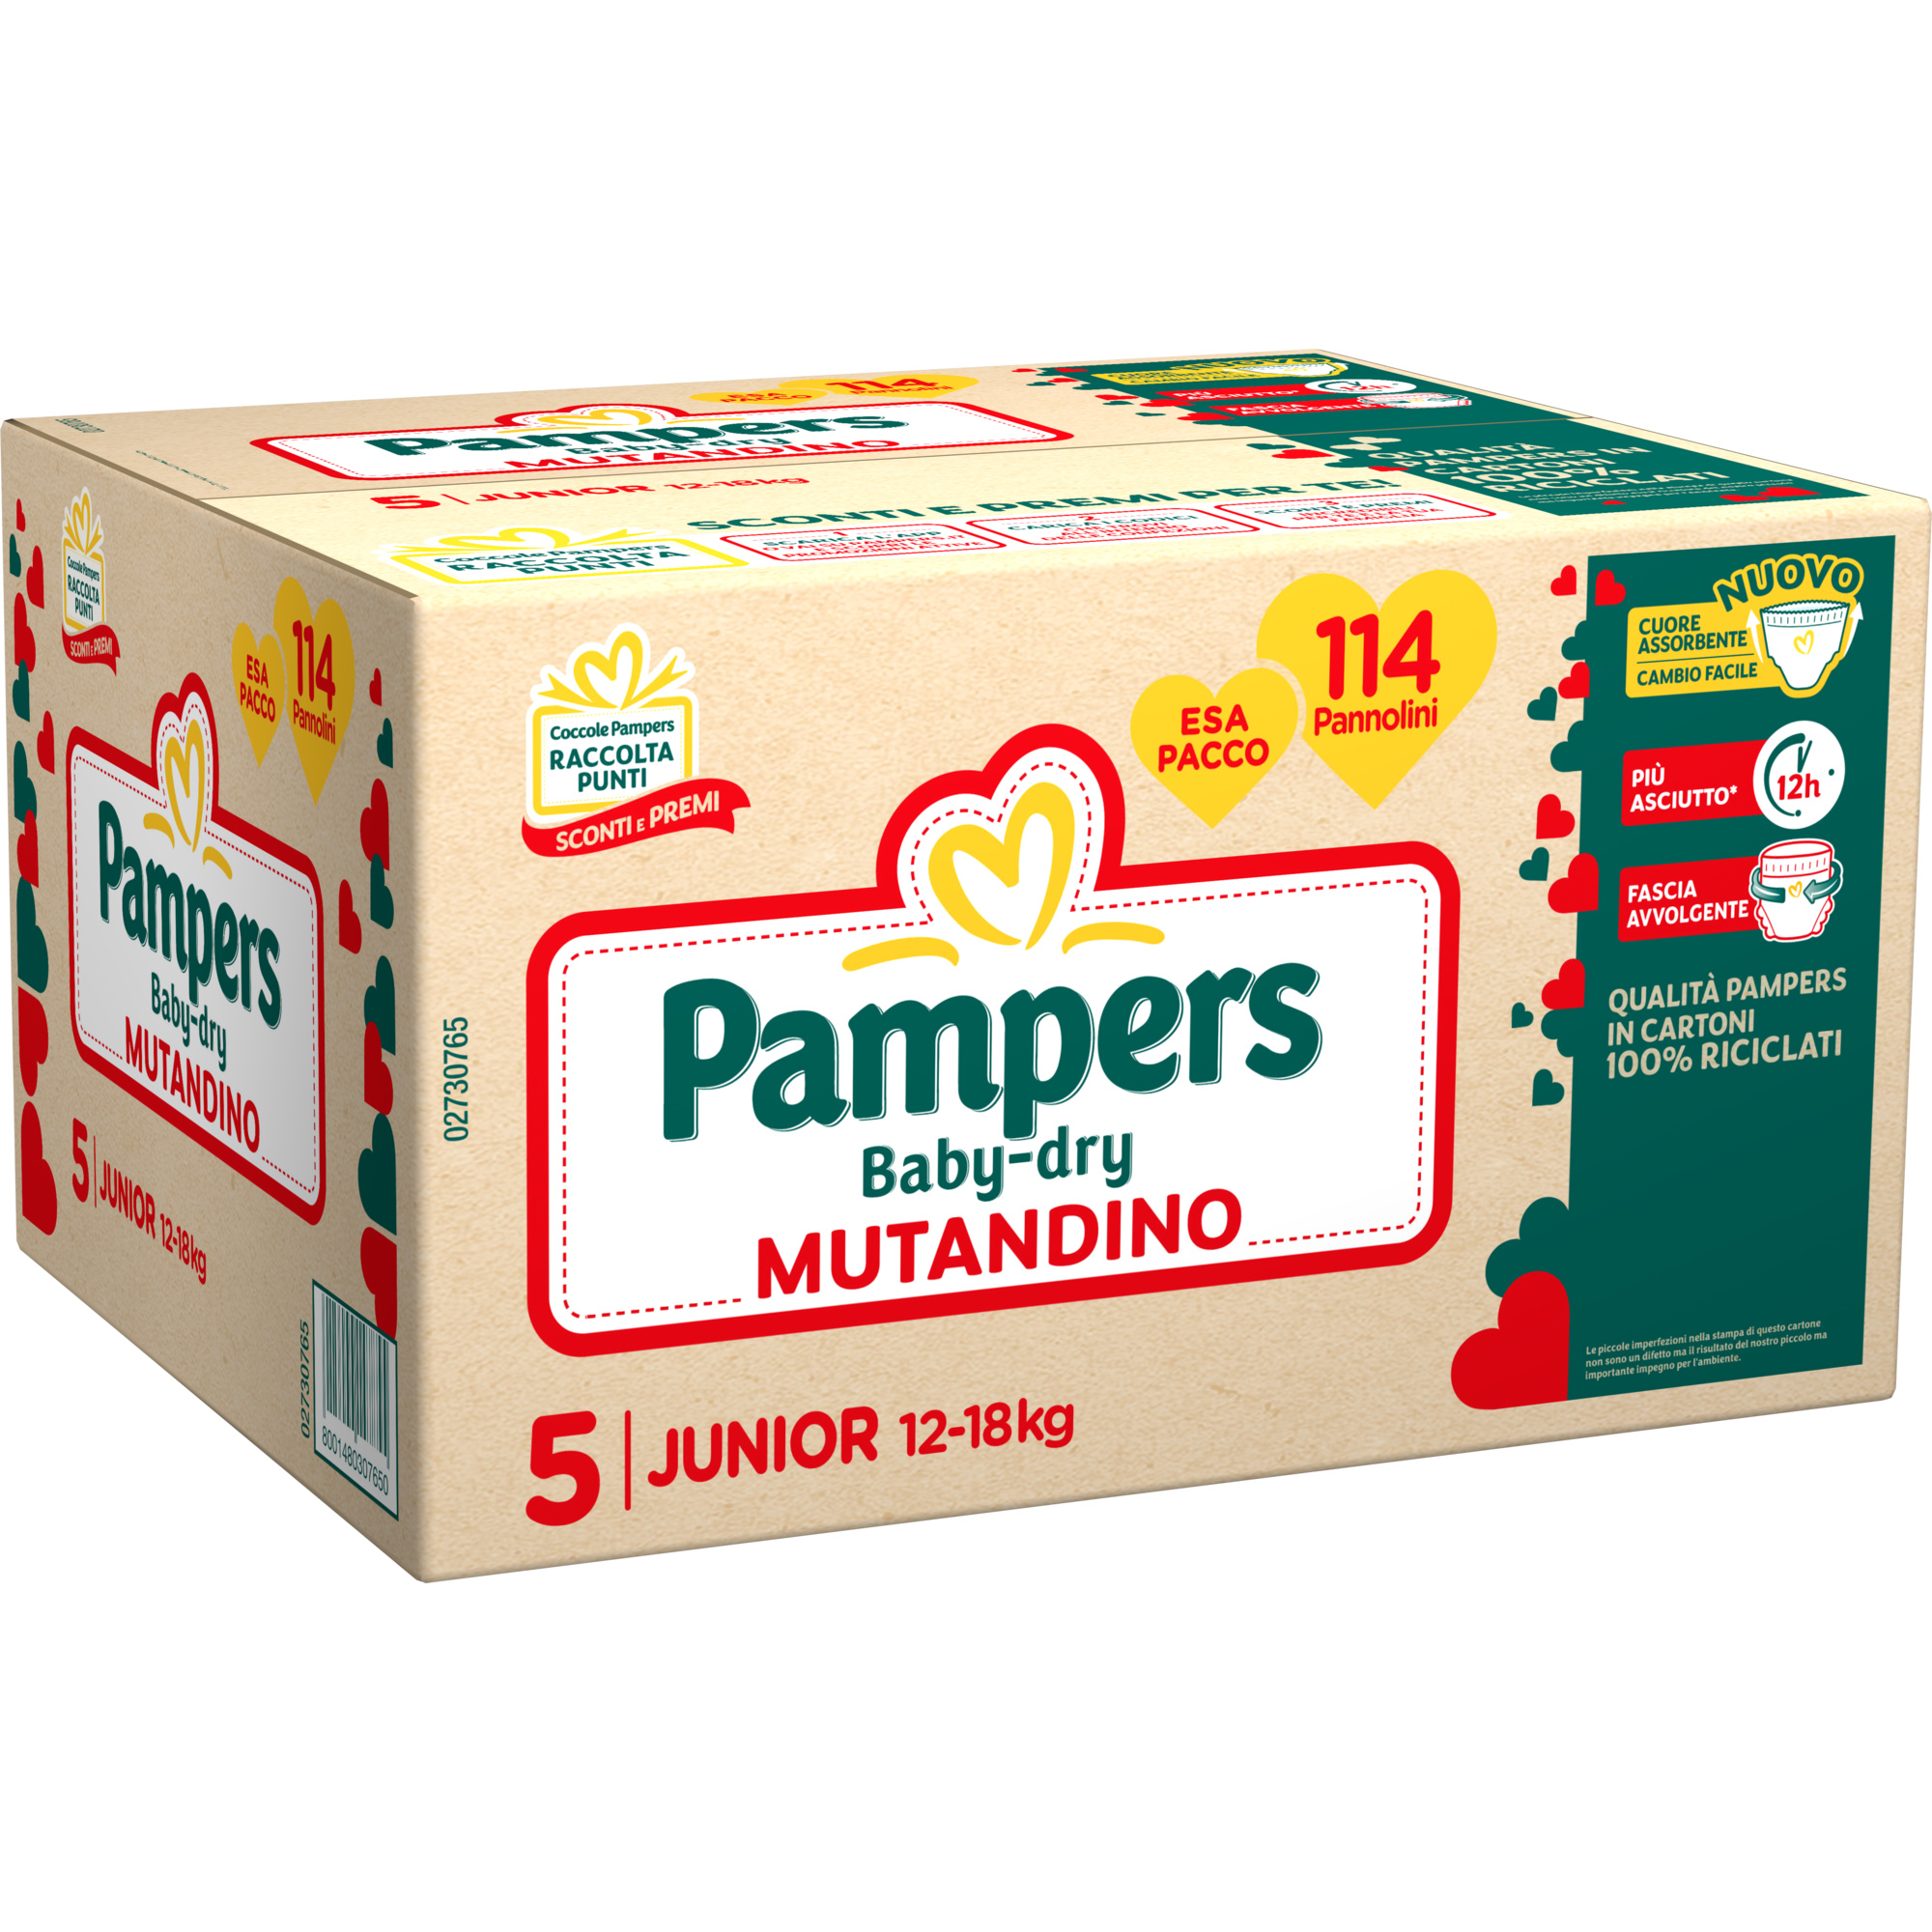 Pampers - esa pack babydry mutandino junior 114 pz - Pampers